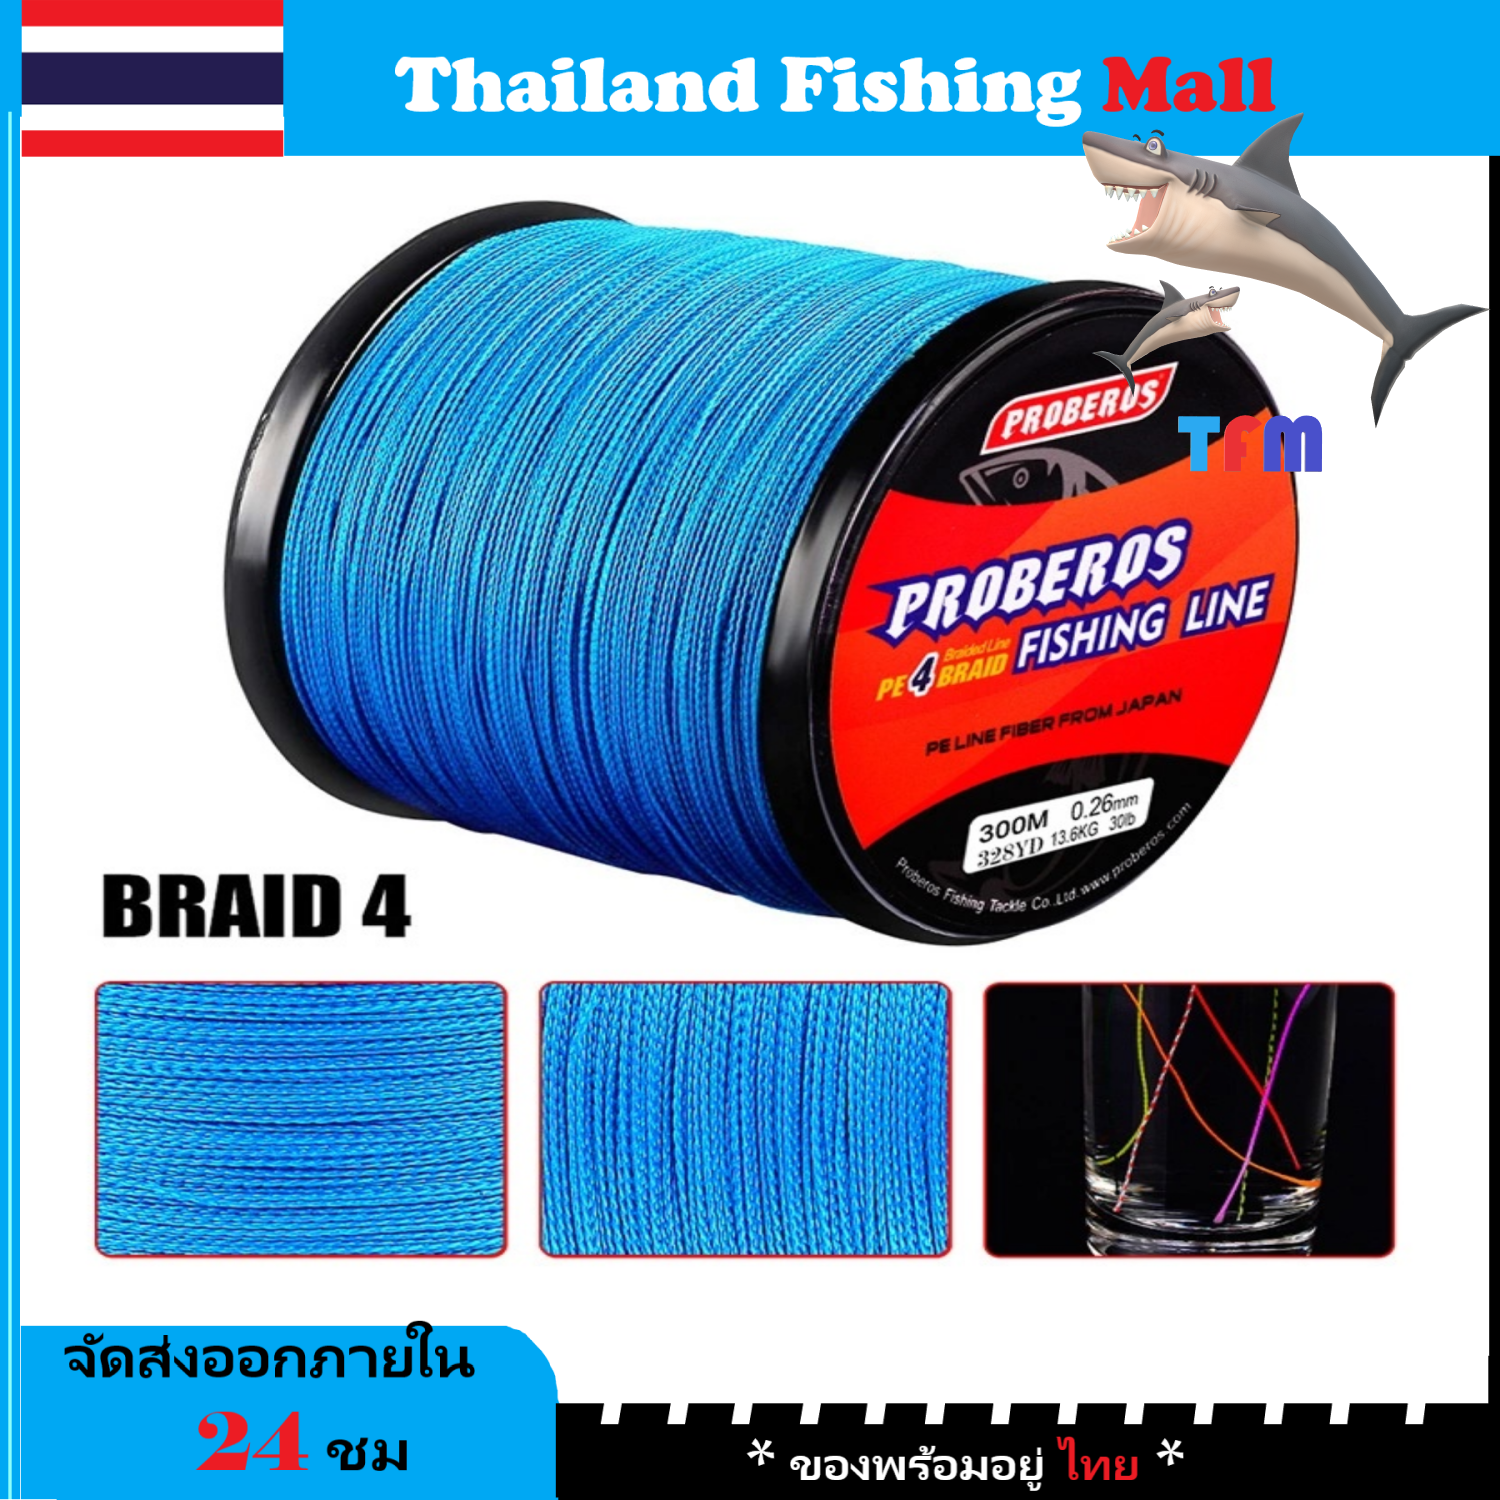 1-2 วัน (ส่งไว ราคาส่ง) 300 เมตร สาย PE ถัก 4 สีฟ้า / Blue เหนียว ทน ยาว - ศูนย์การค้าไทยฟิชชิ่ง [ Thailand Fishing Mall ] Fishing line wire Proberos Pro Beros - Blue